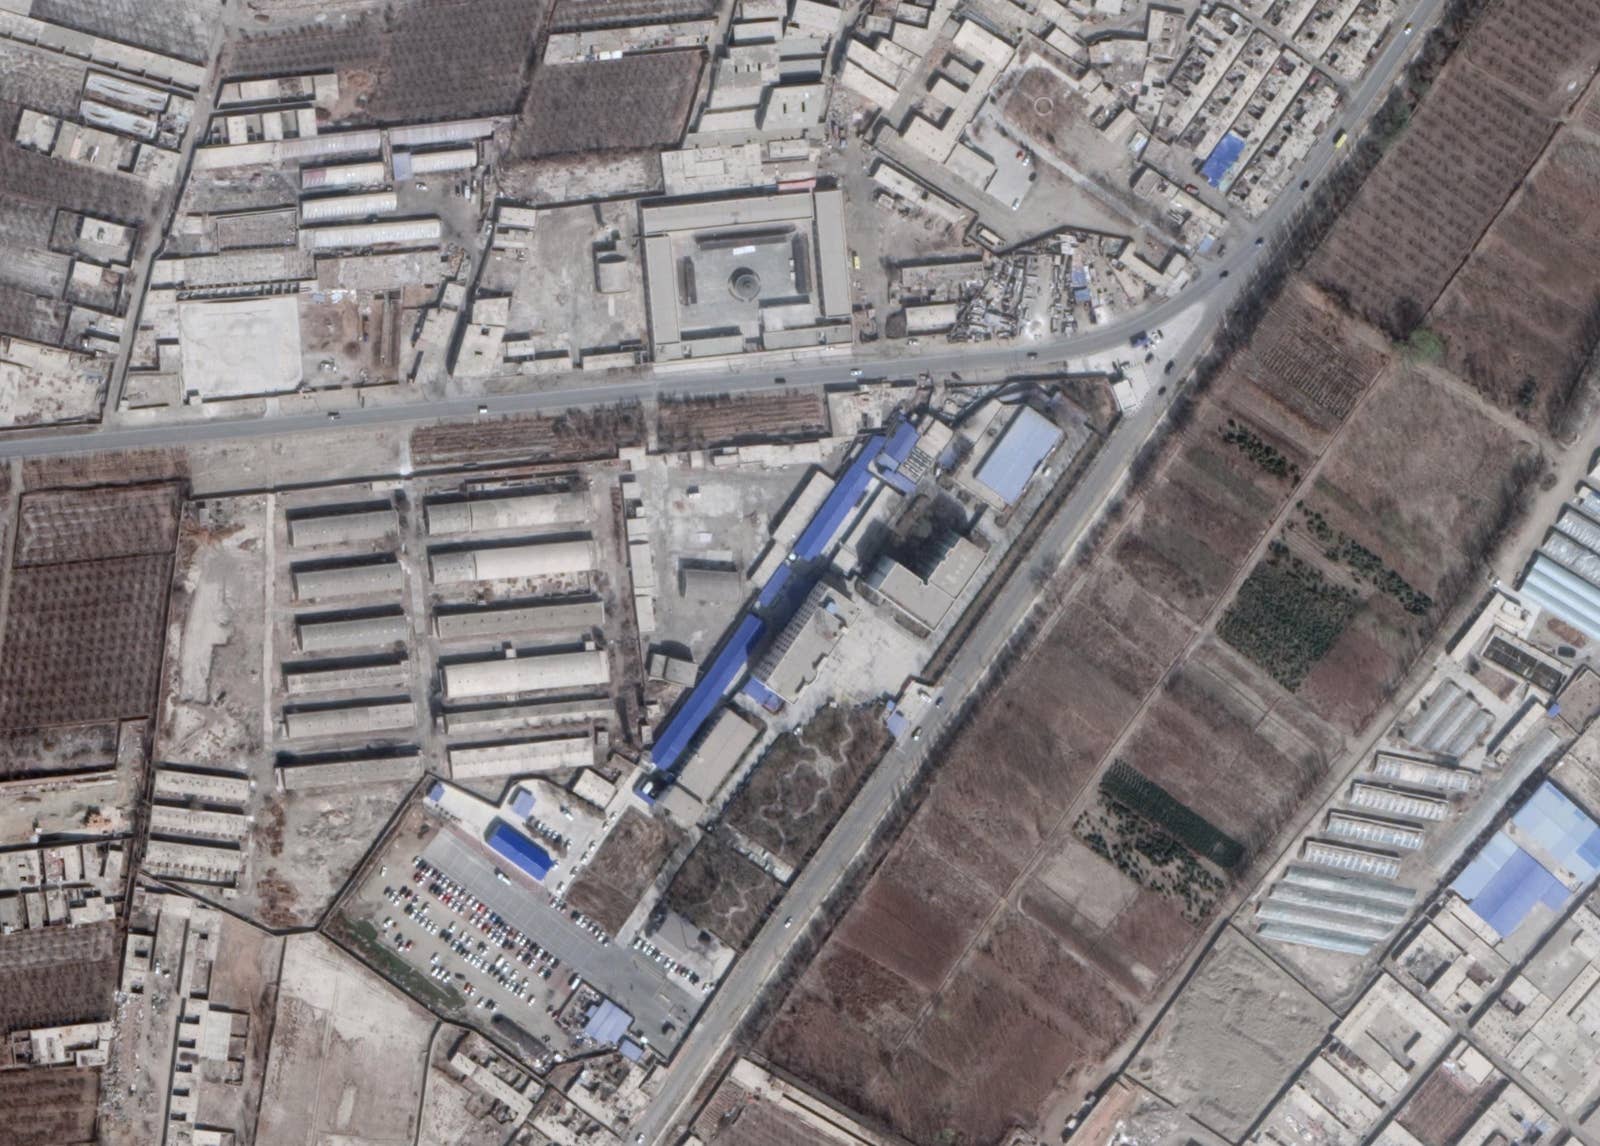 新疆ウイグル自治区の中部にあるコルラ市の近辺にある、中国の再教育施設をとらえた衛星画像。この施設を訪れたことがあるウイグル人亡命者が、GPS座標を提供してくれた。